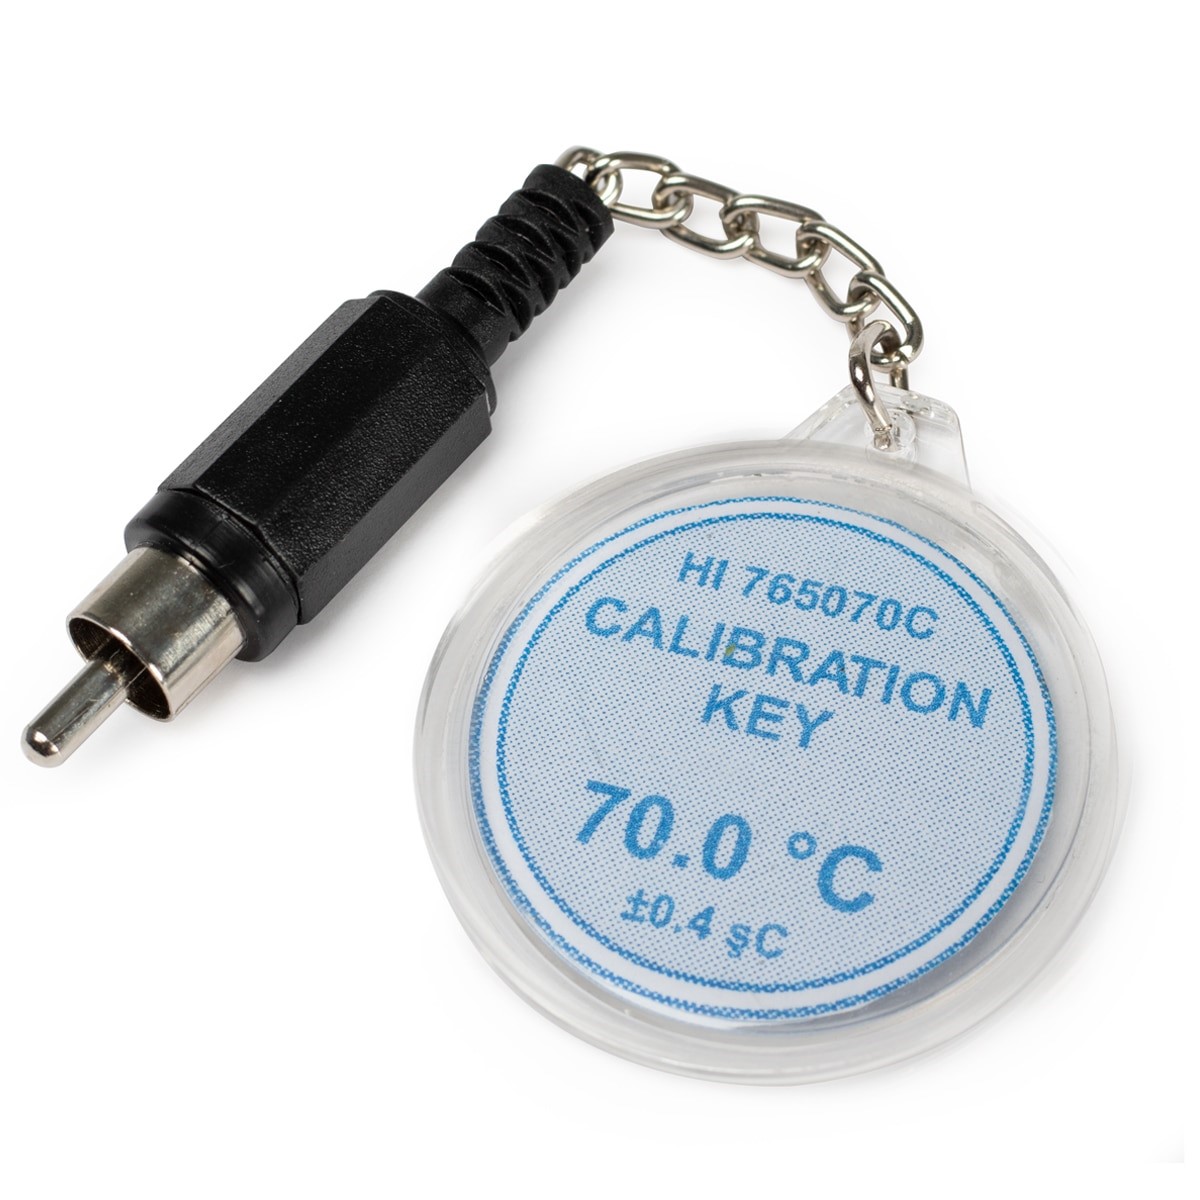 HI765070C Calibration Check Key at 70°C (HI765 Probes)